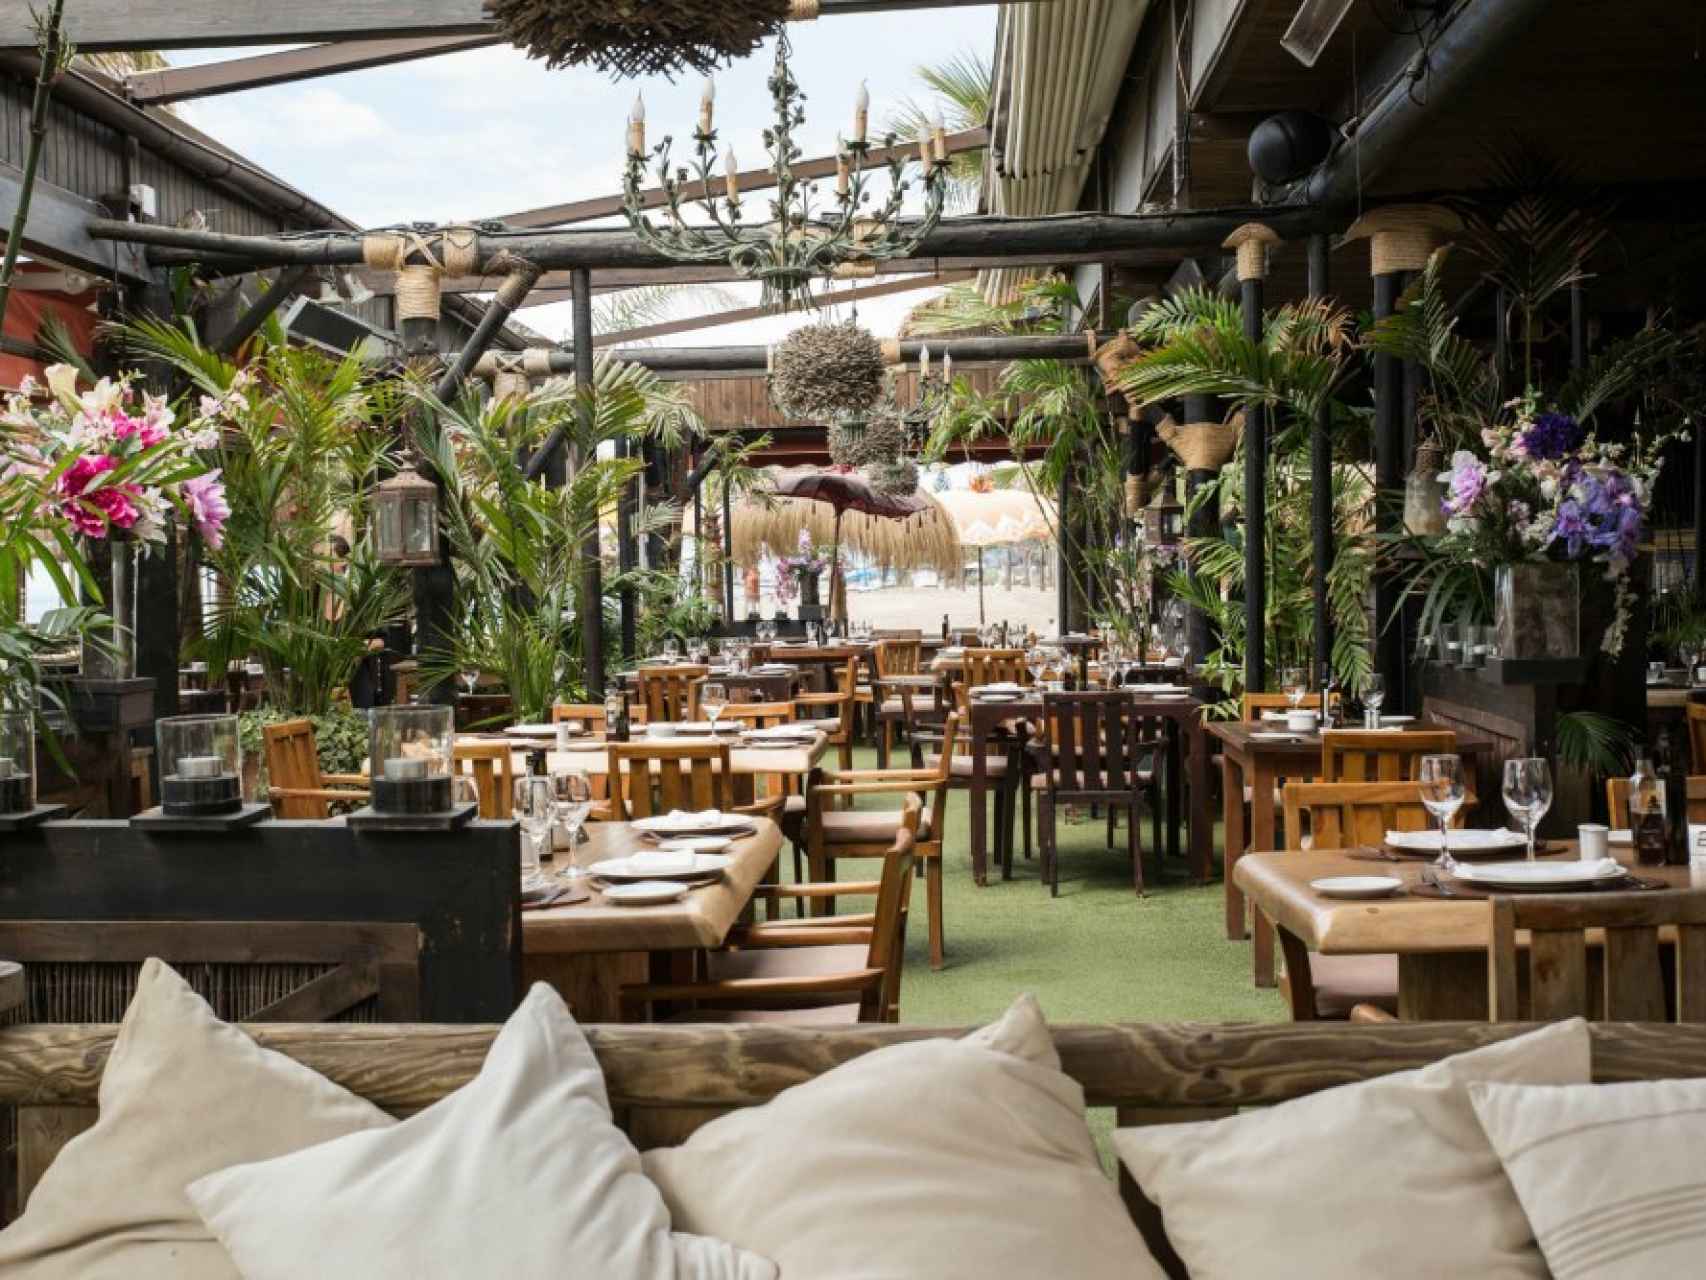 Una de las zonas interiores de Trocadero Playa, uno de los restaurantes más famosos de Marbella.